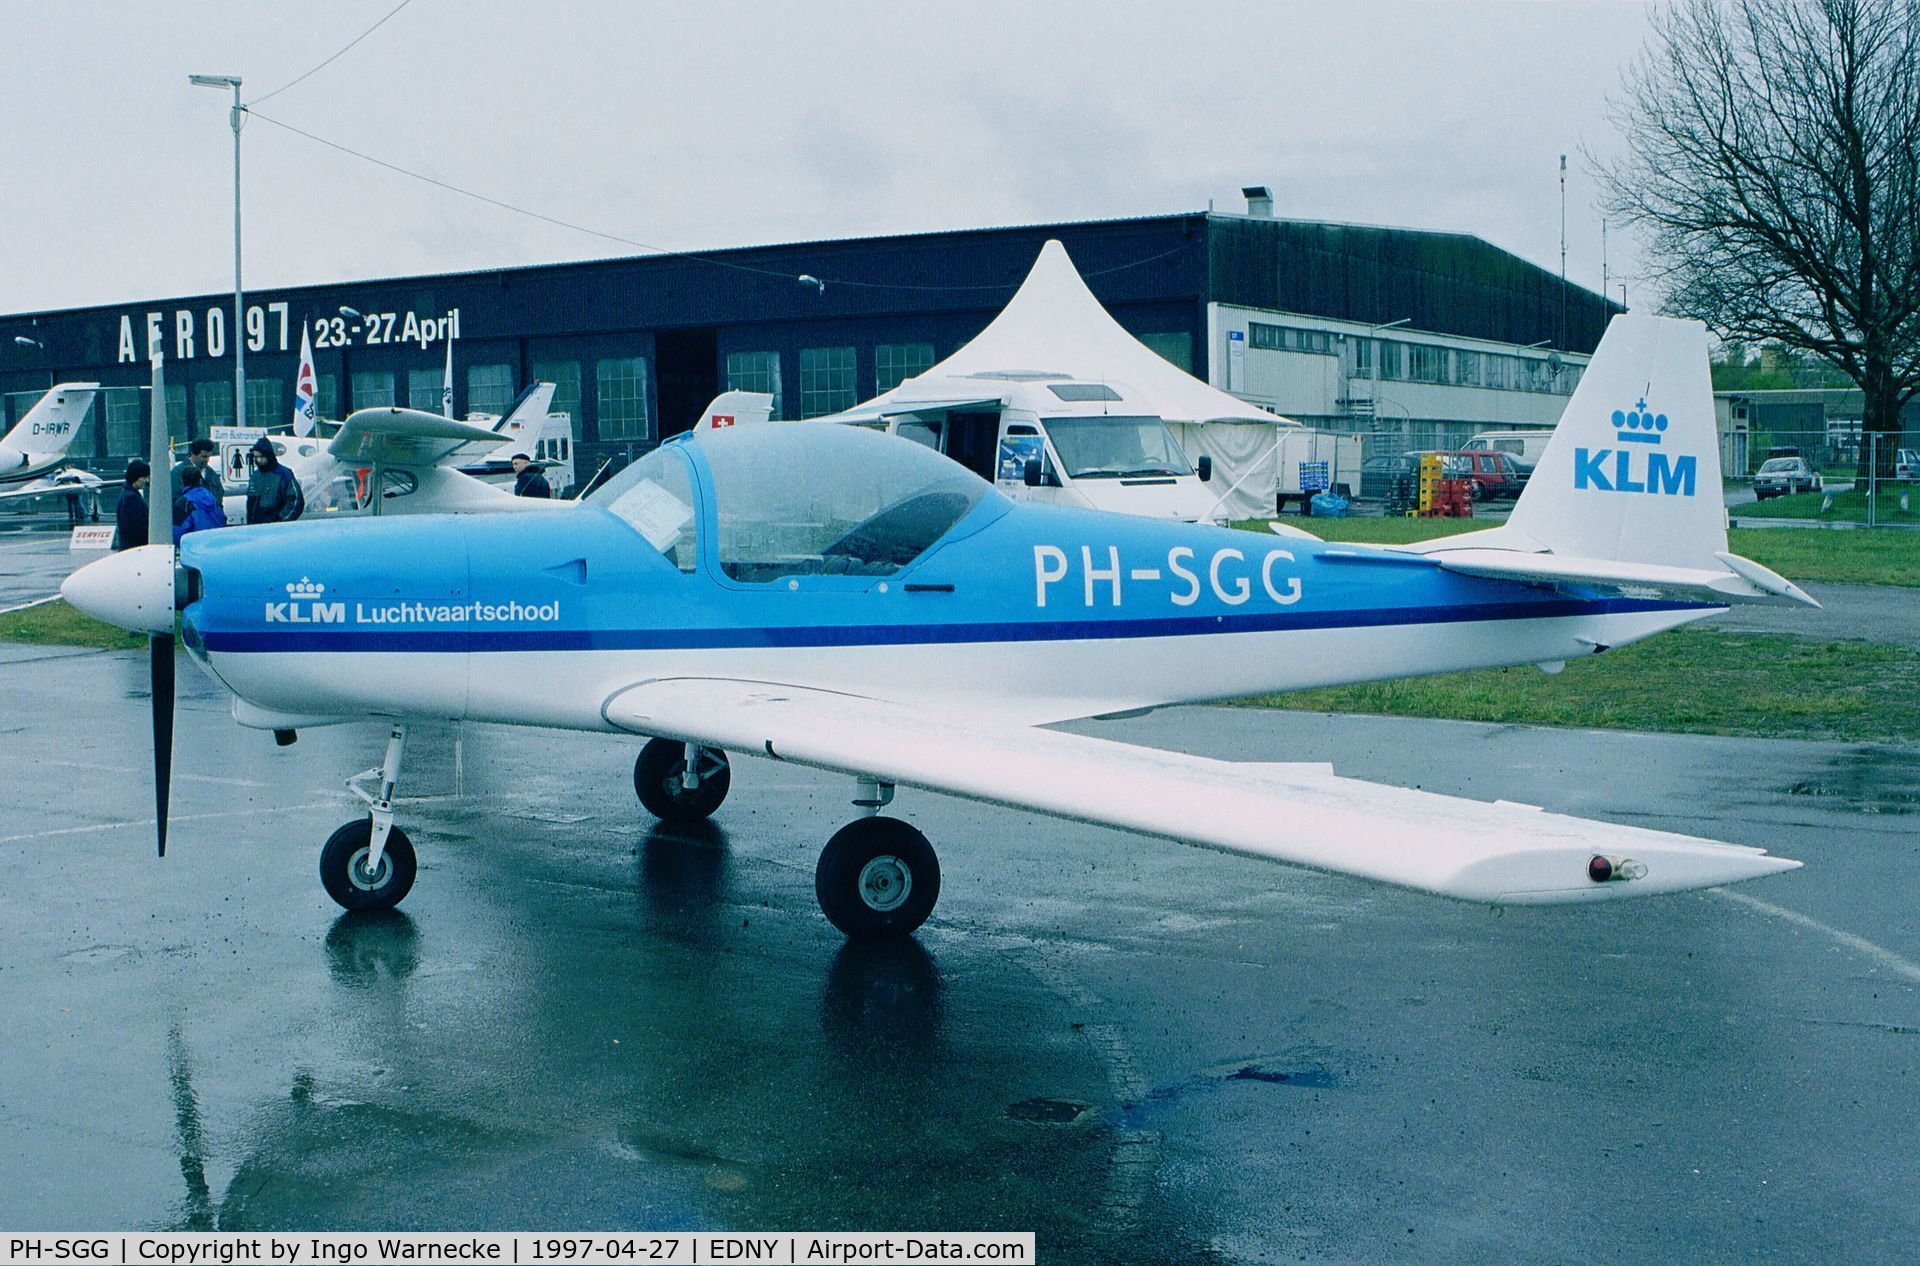 PH-SGG, 1990 Slingsby T-67C Firefly C/N 2099, Slingsby T-67C of KLM Luchtvaartschool at AERO 1997, Friedrichshafen